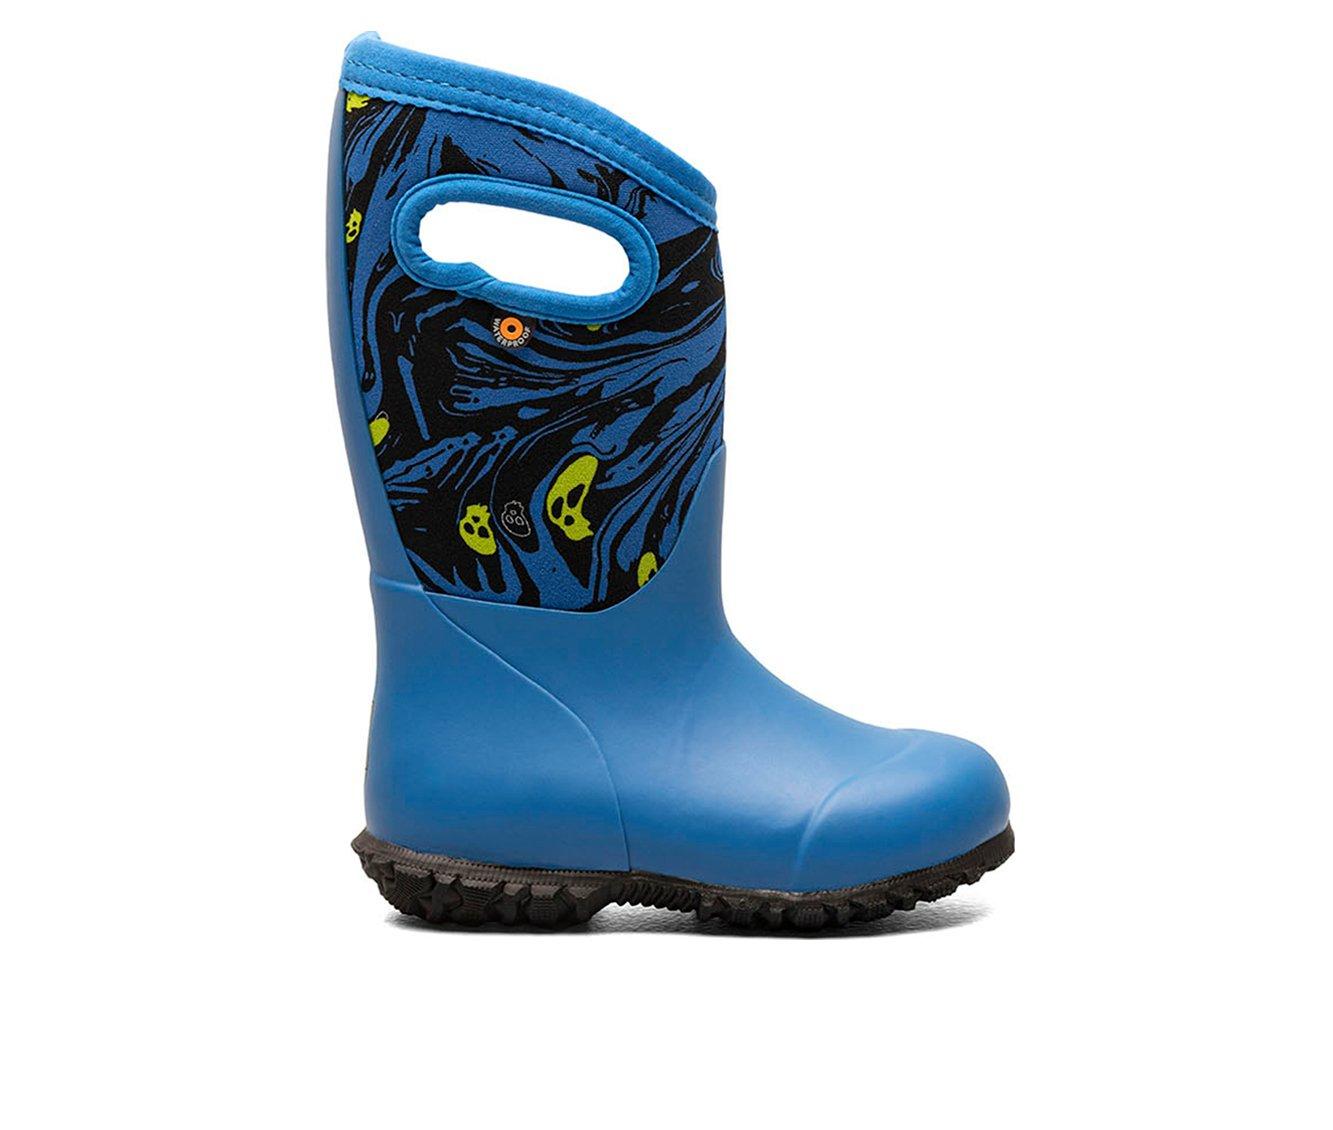 Girls' Bogs Footwear Toddler & Little Kid York Spooky Rain Boots